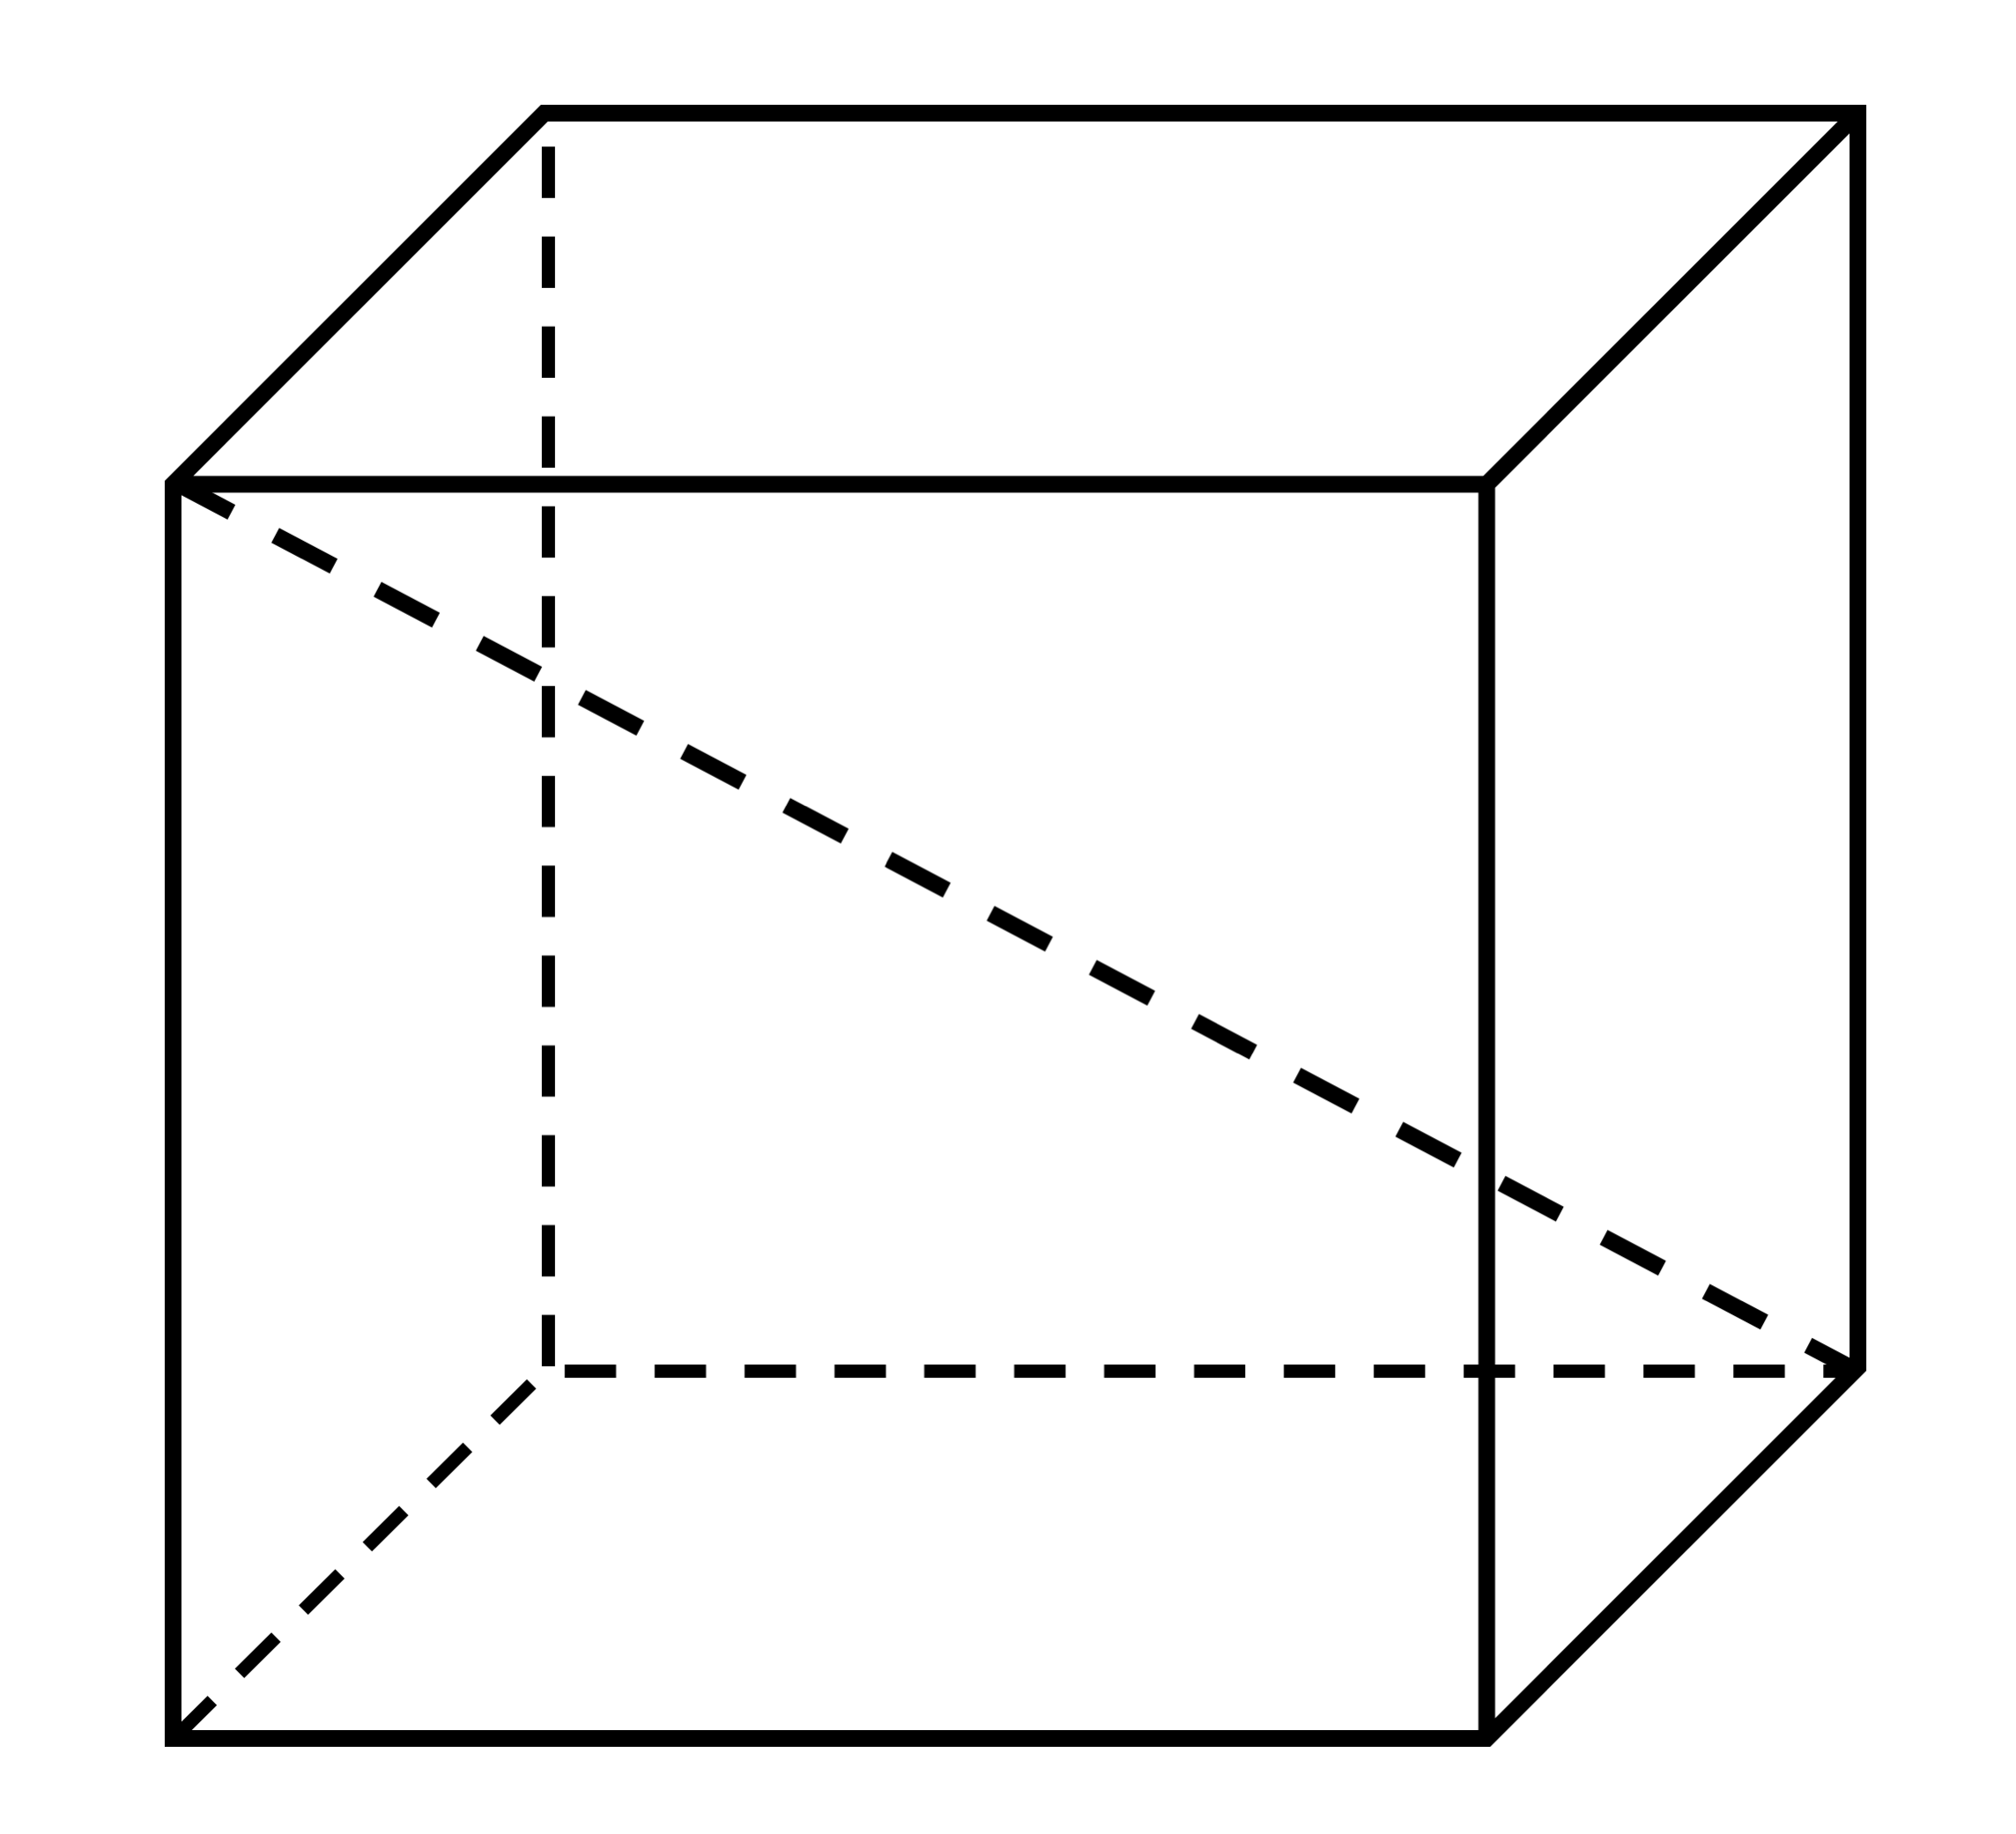 Является параллелепипедом. Паралипипет. Прямоугольные параллепипед. Прямоугольный параллелепипед 2х1х1. Прямоугольный паралле.